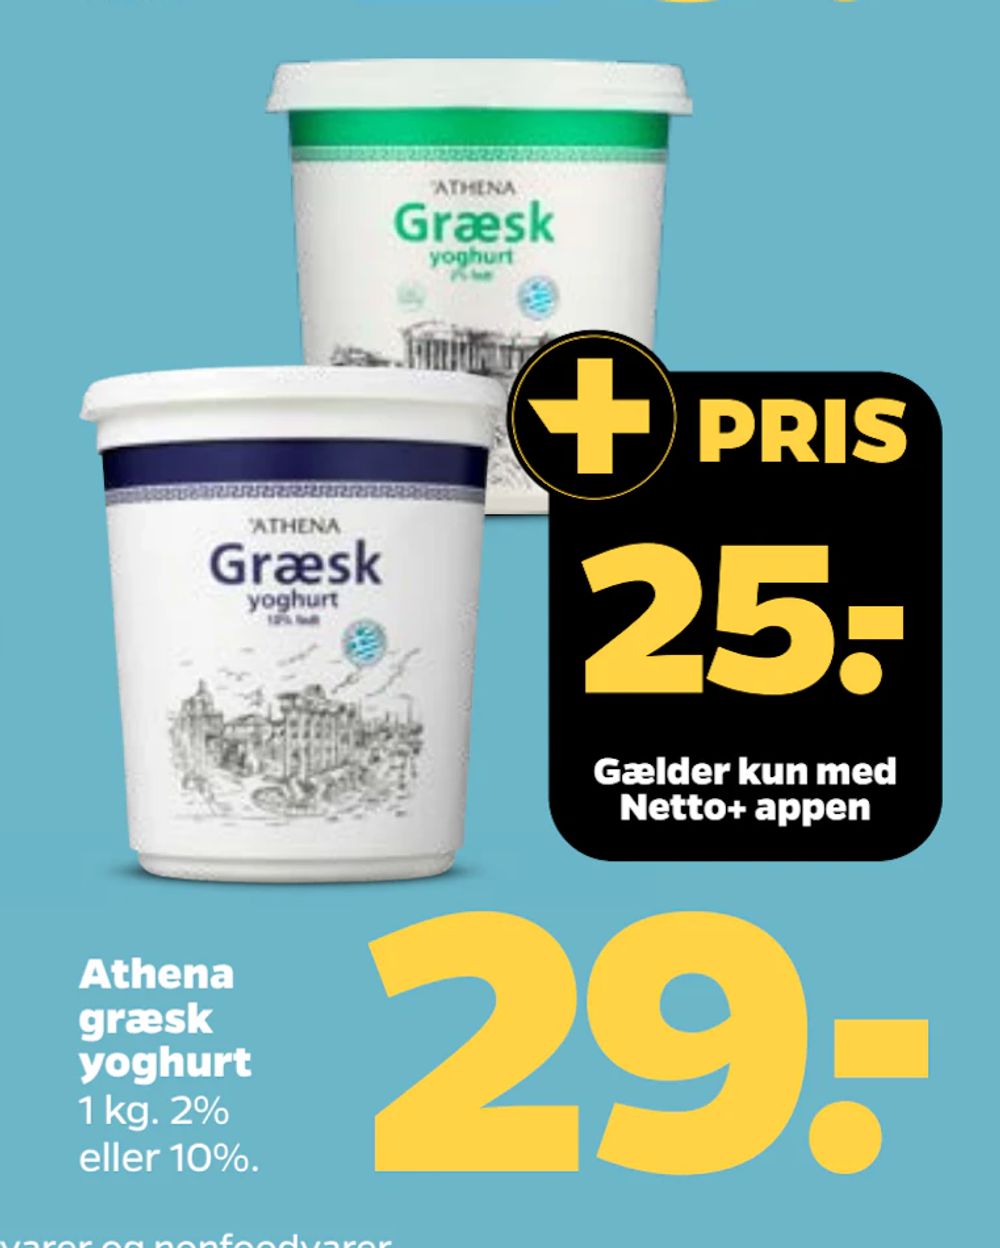 Tilbud på Athena græsk yoghurt fra Netto til 29 kr.